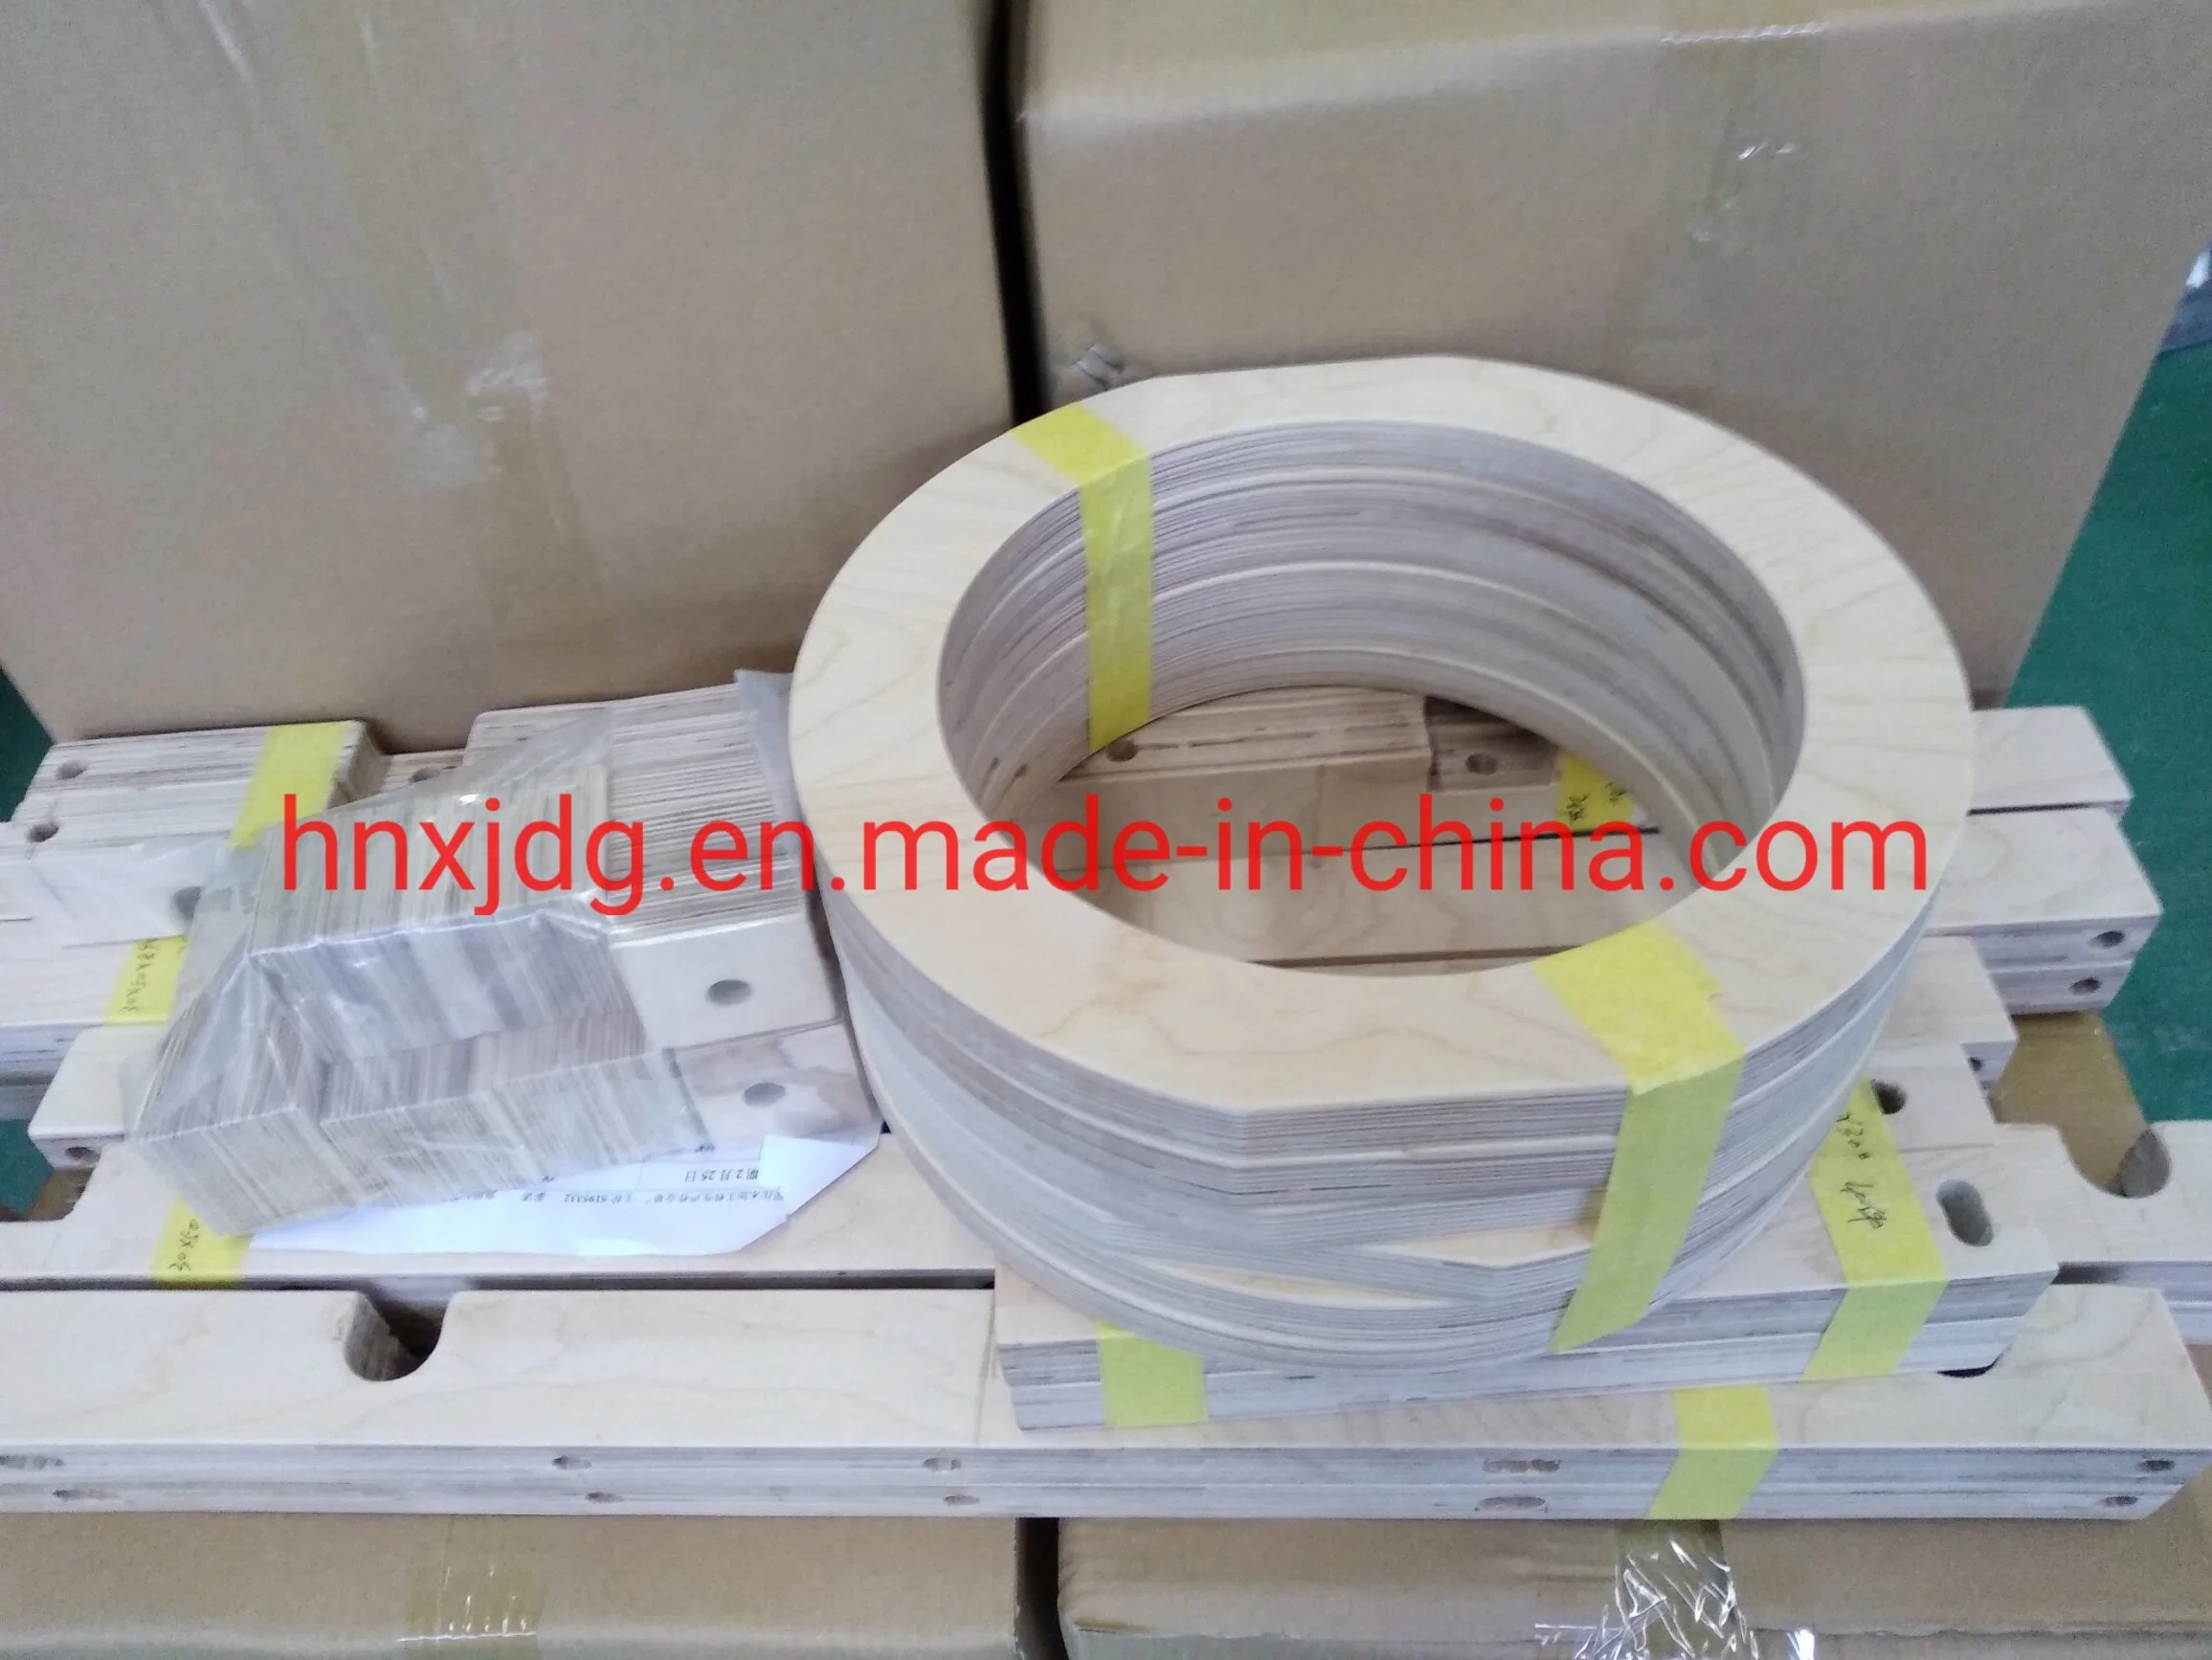 China Original Manufacturer C2b/C3b/ C4b Laminated Wood/ High Densified Wood/Plywood Sheet for Transformers